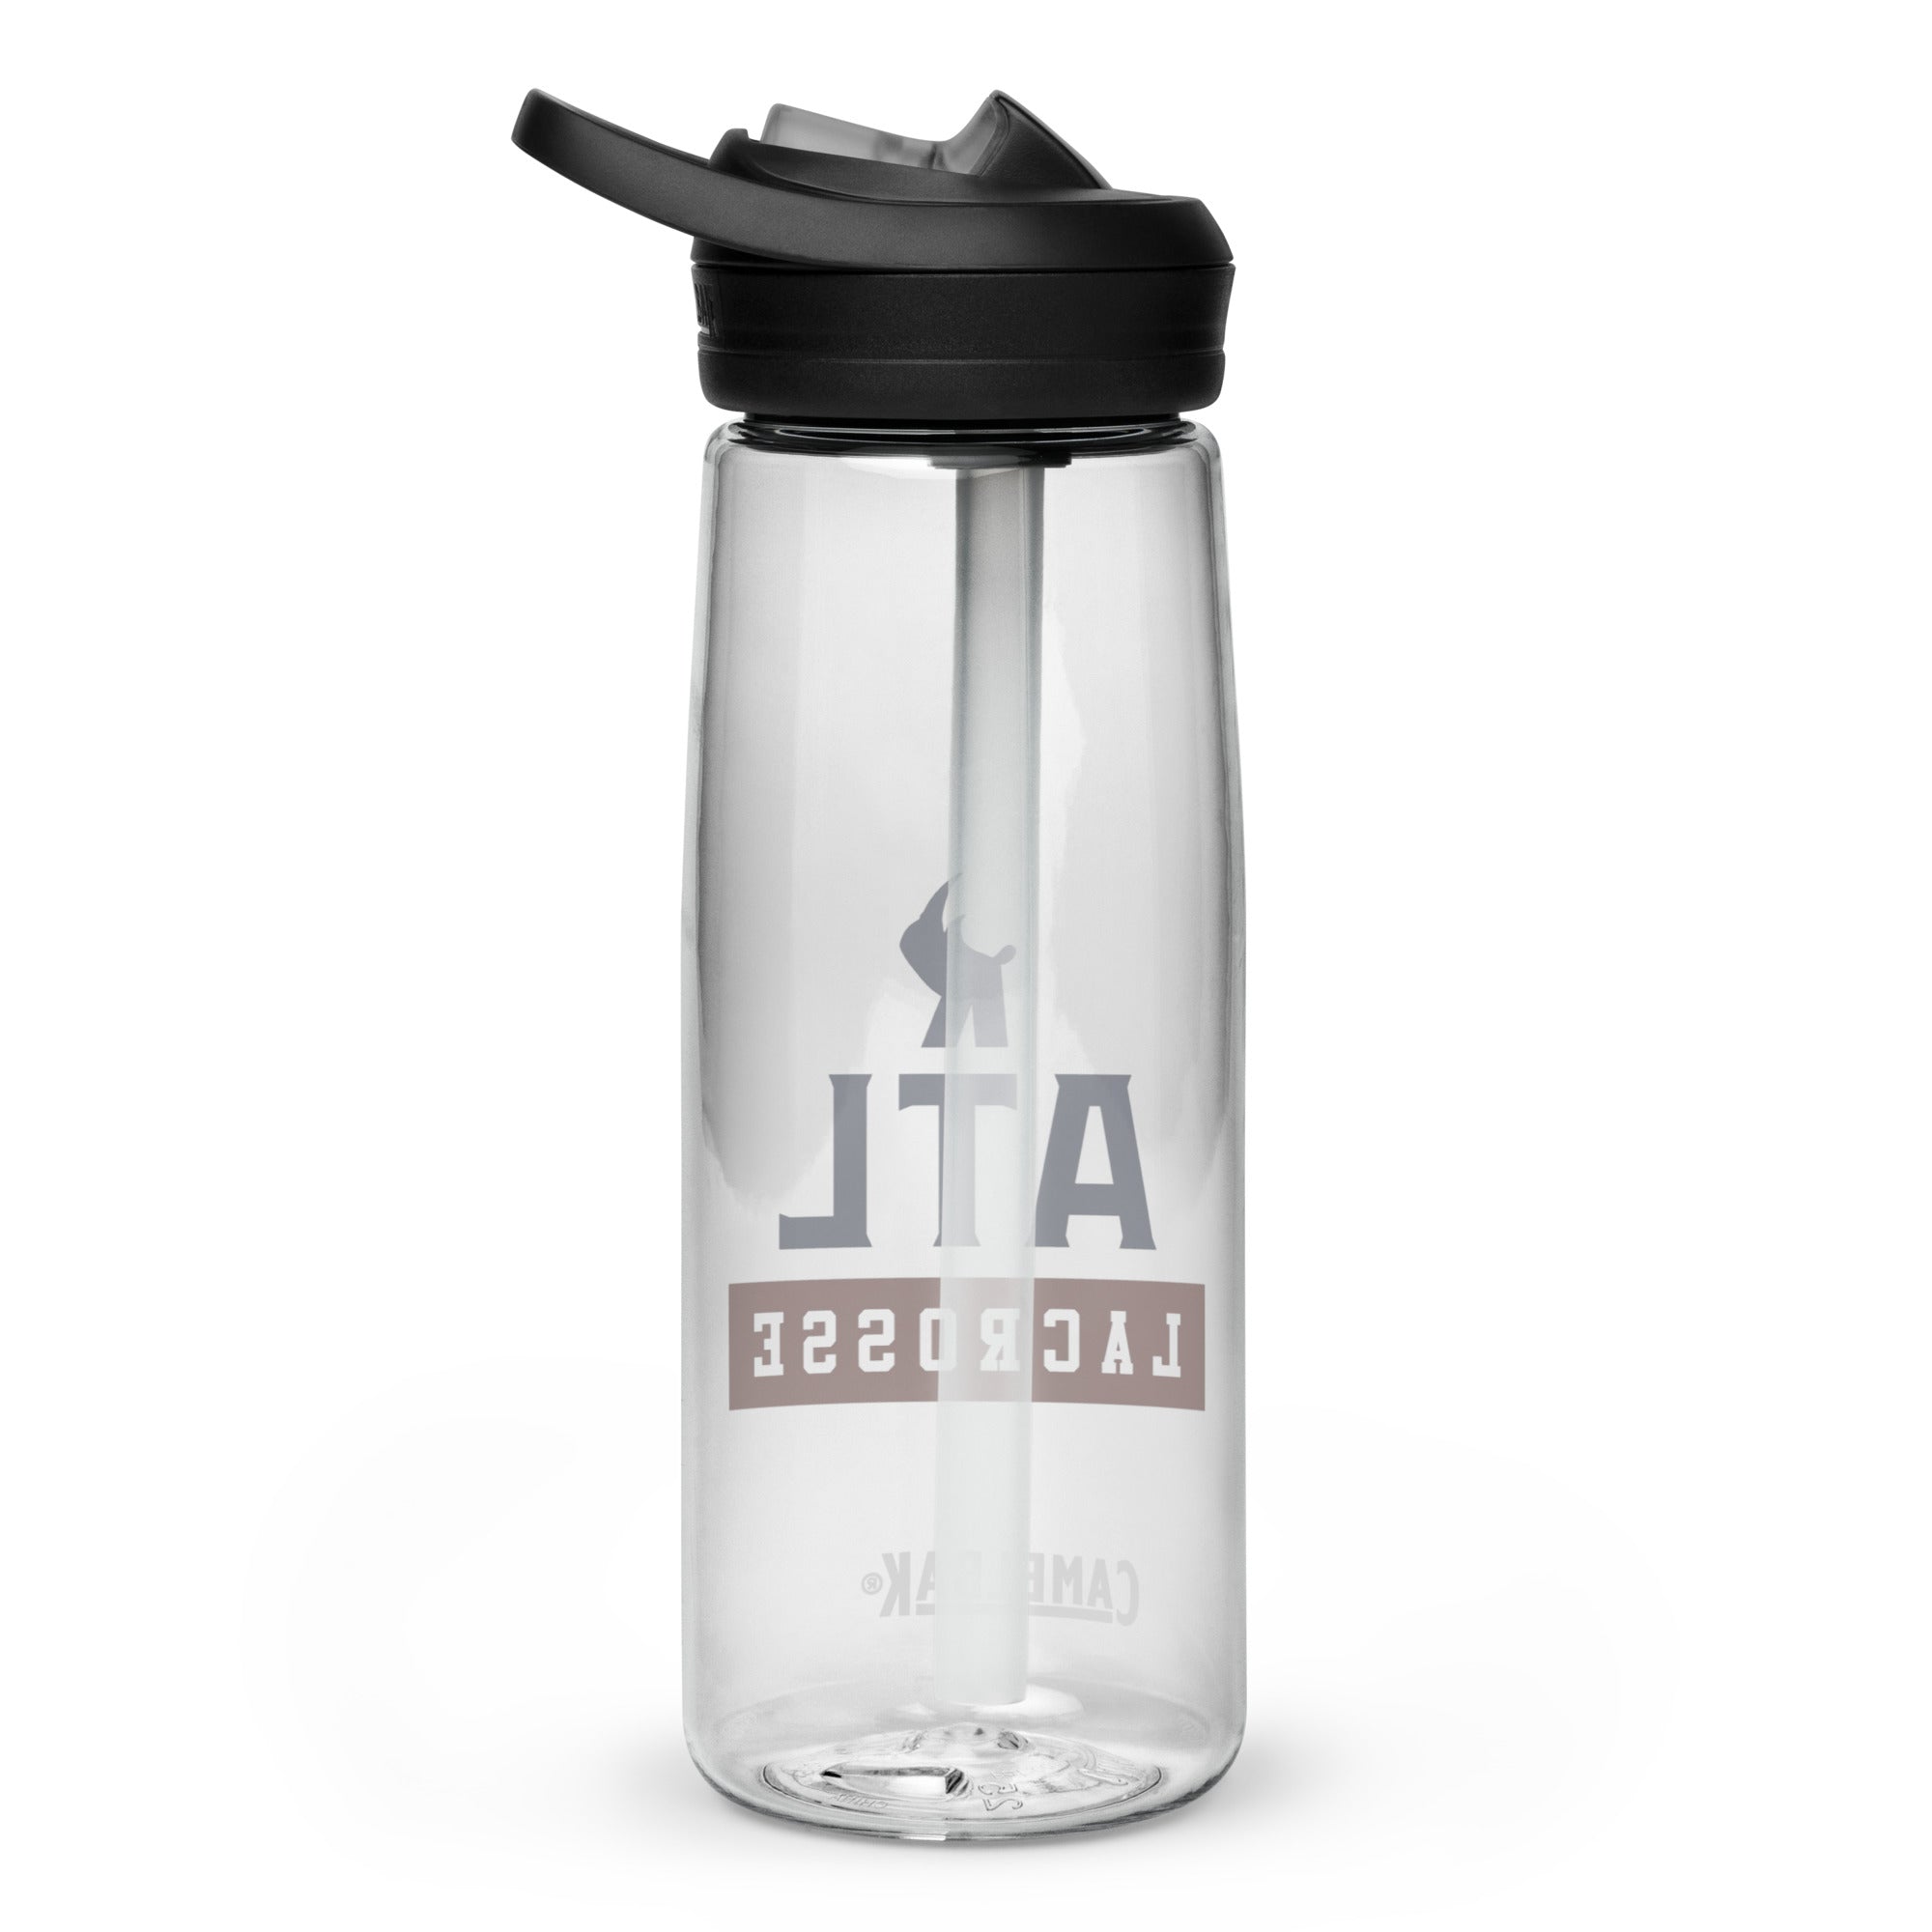 Rhino ATL Sports water bottle